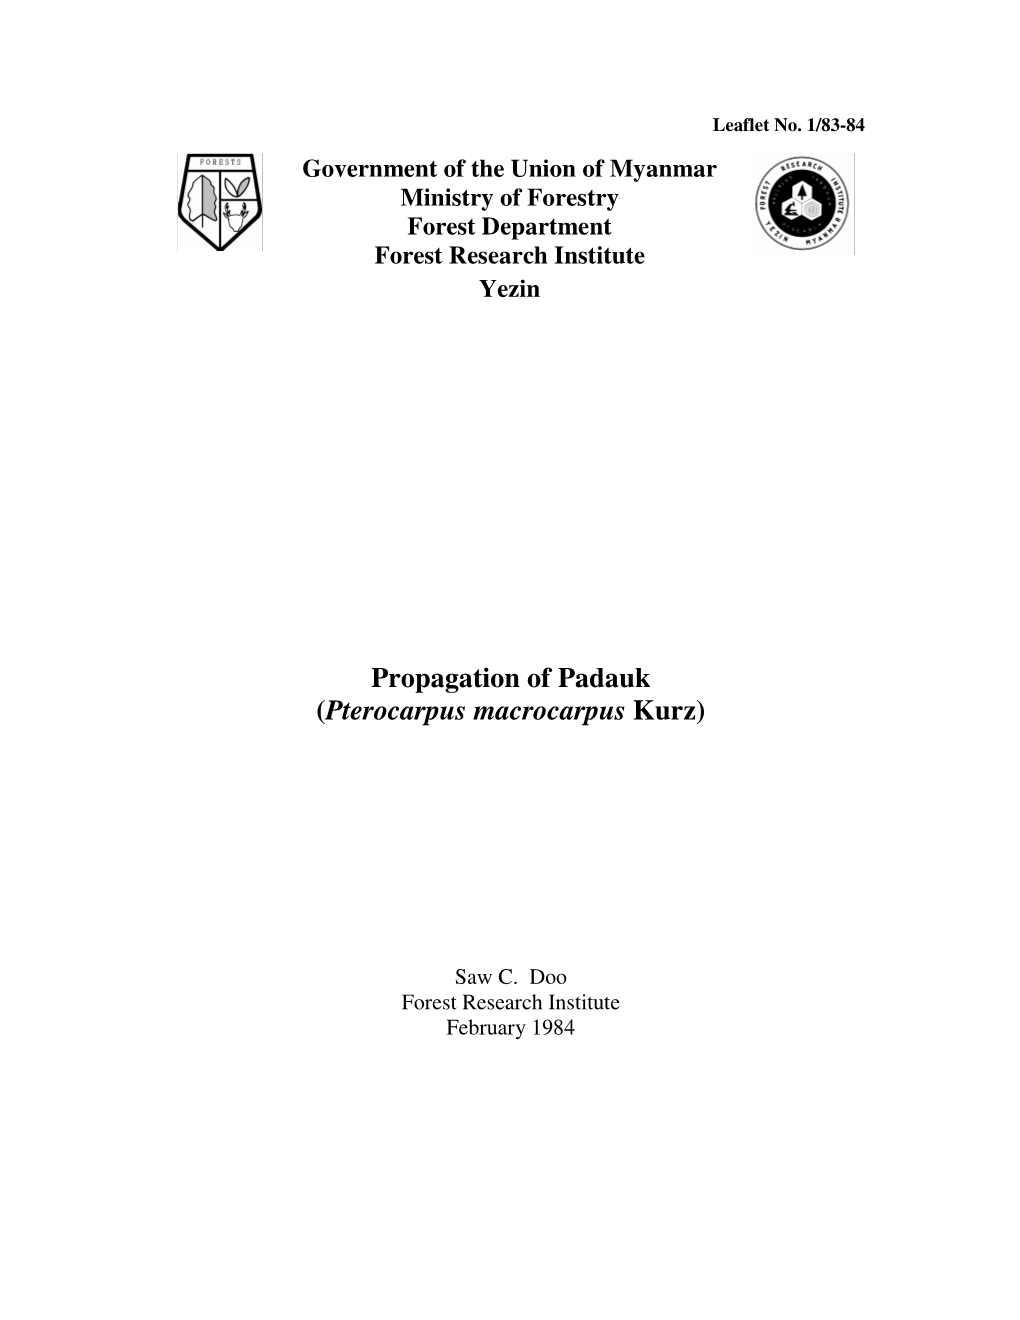 Propagation of Padauk (Pterocarpus Macrocarpus Kurz)